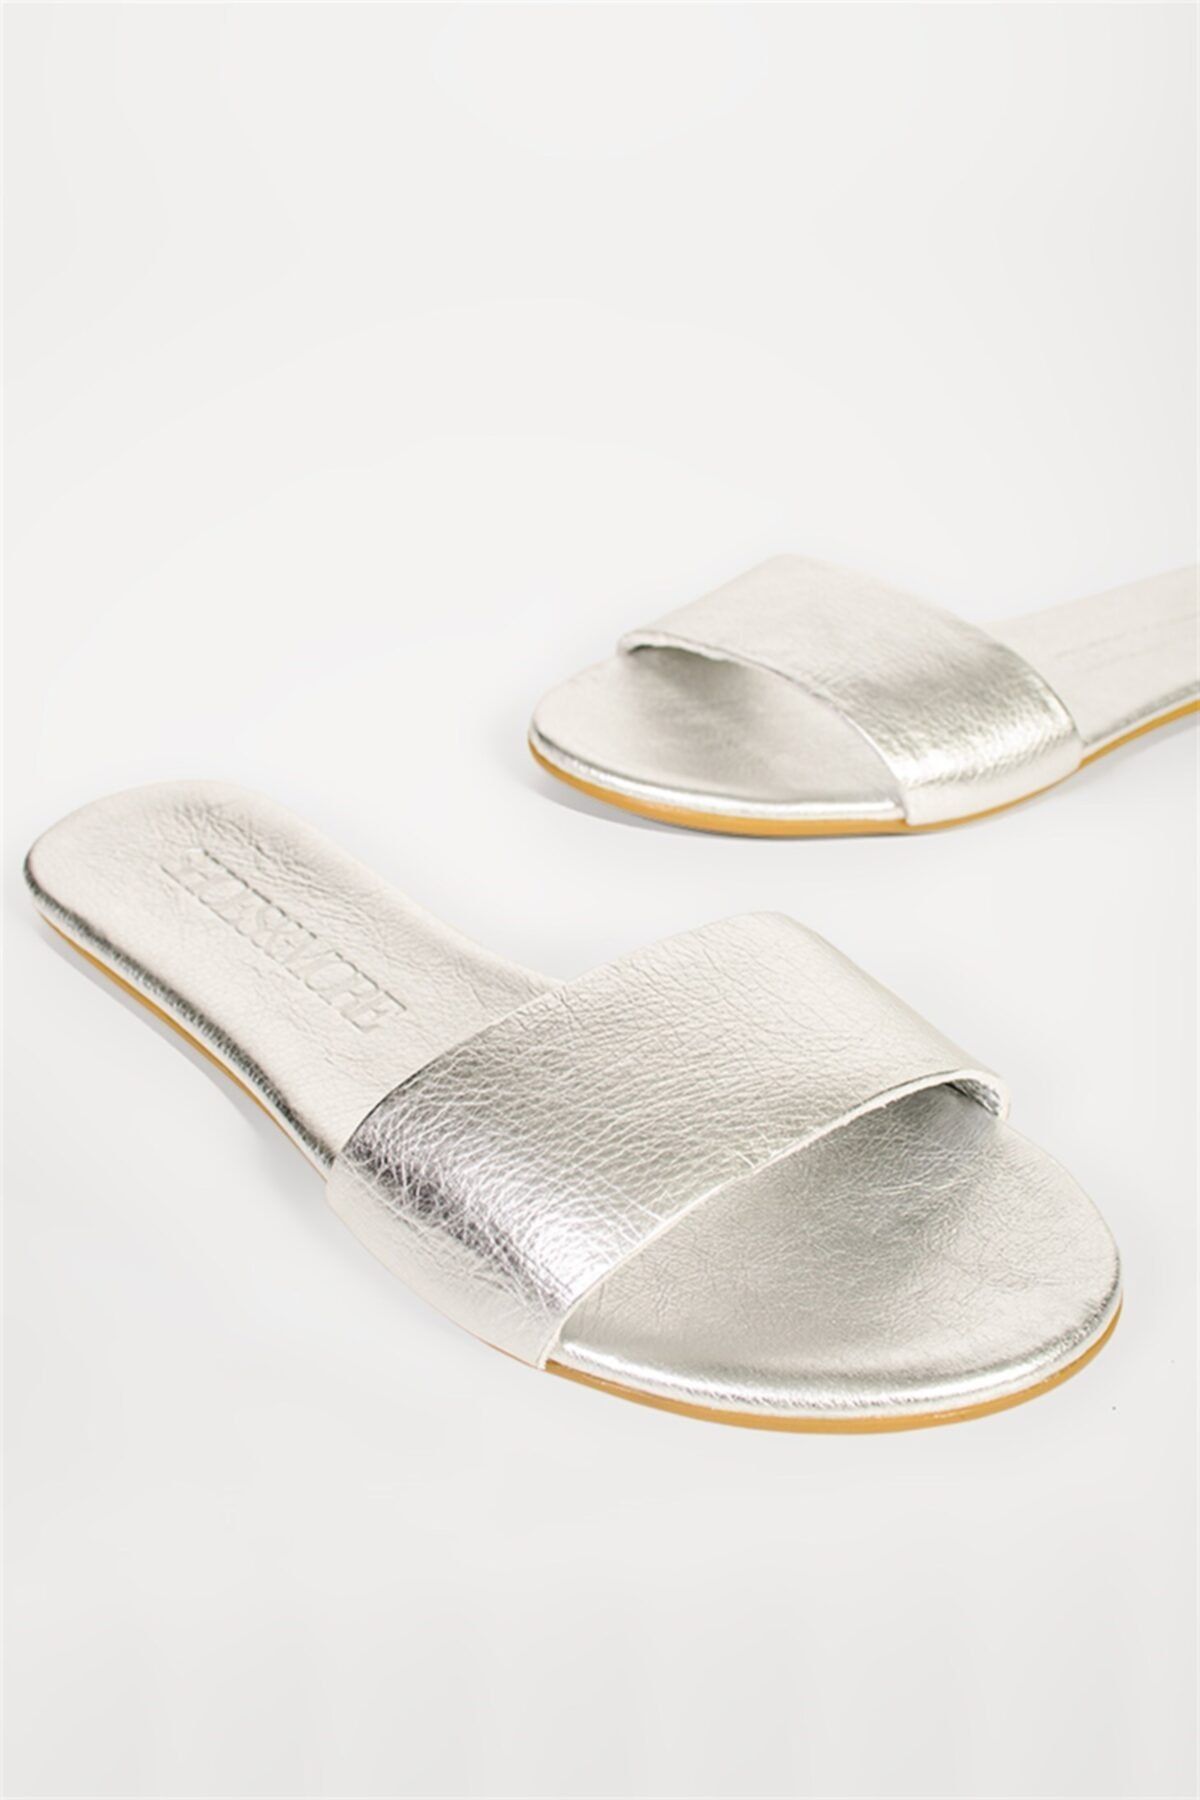 Shoes & More Kadın Gümüş Terlik